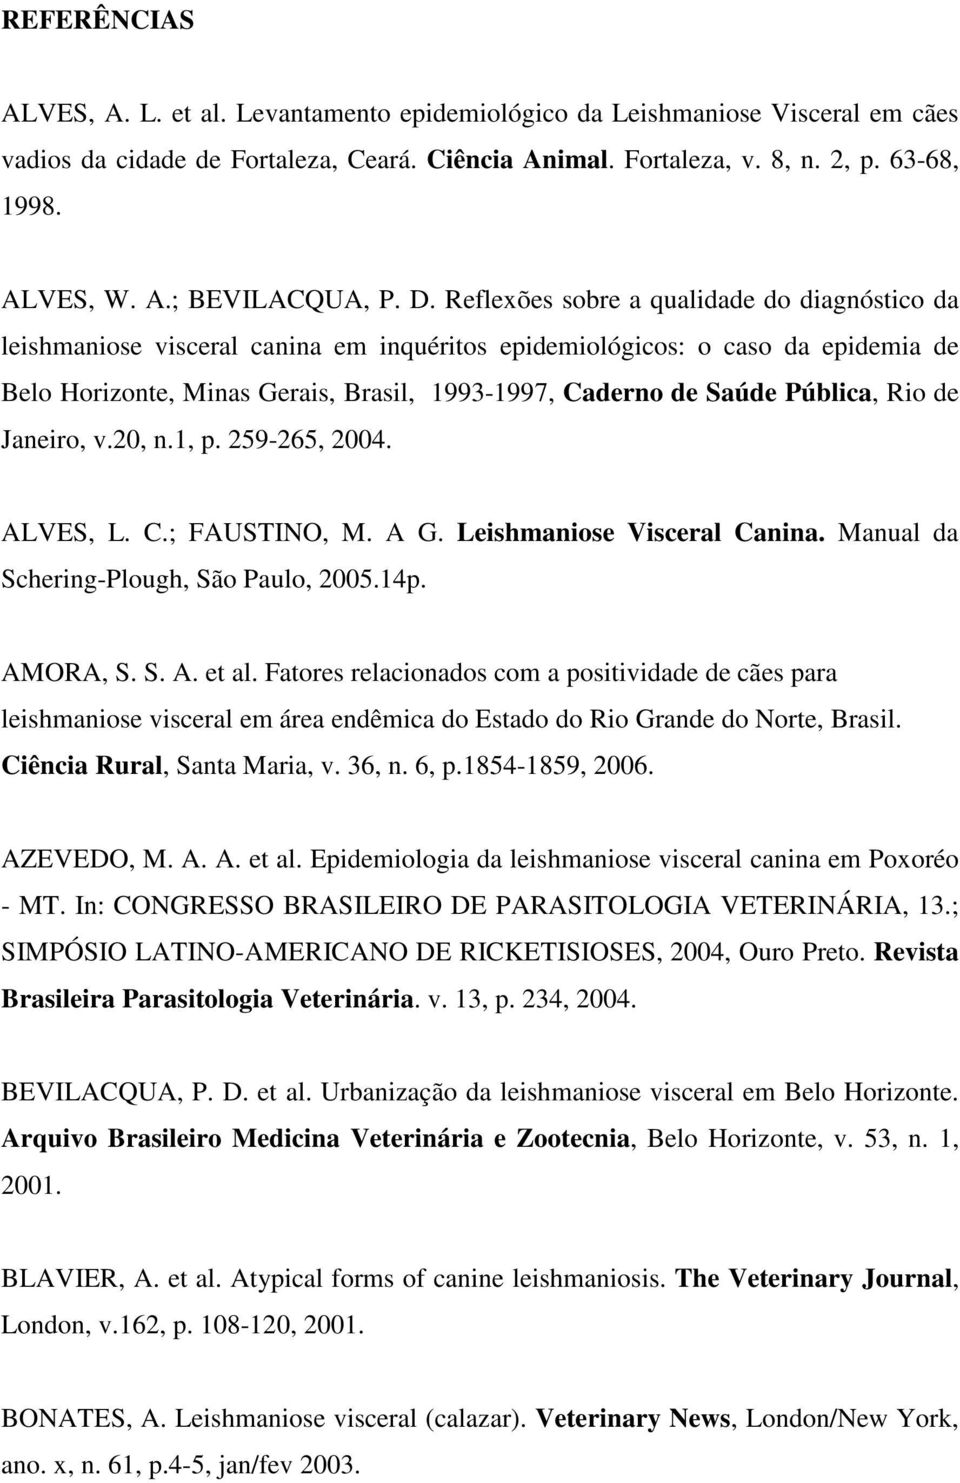 Pública, Rio de Janeiro, v.20, n.1, p. 259-265, 2004. ALVES, L. C.; FAUSTINO, M. A G. Leishmaniose Visceral Canina. Manual da Schering-Plough, São Paulo, 2005.14p. AMORA, S. S. A. et al.